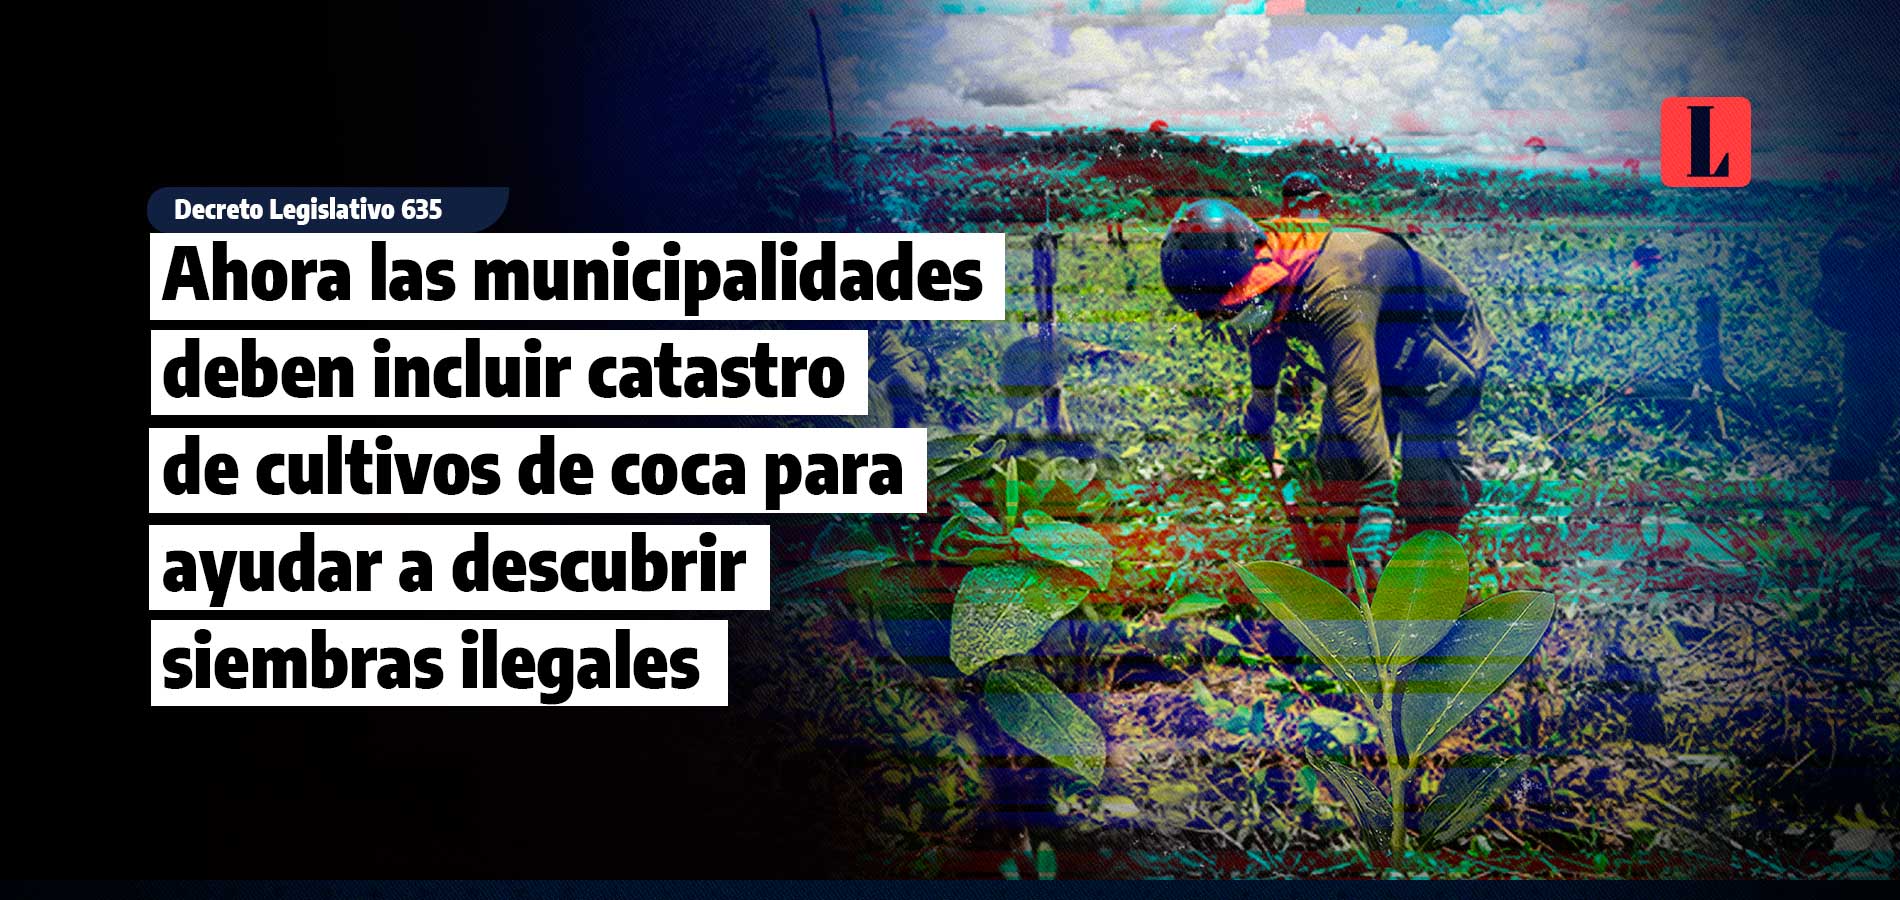 Ahora las municipalidades deben registro catastral de áreas de cultivos de coca para ayudar a detectar siembras ilegales (tráfico ilícito de drogas)